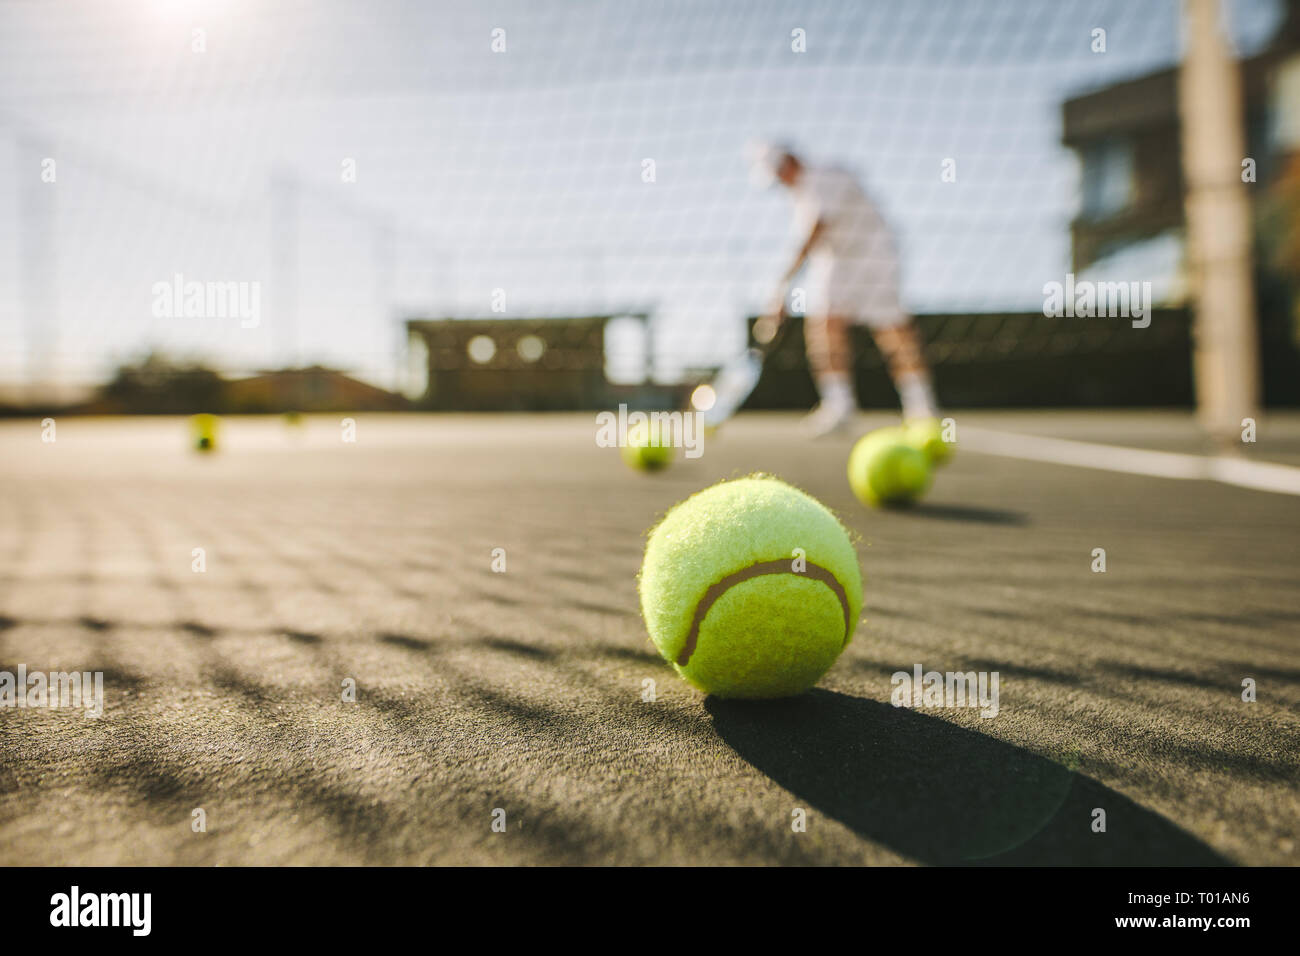 balles de tennis couchées au sol sur un court de tennis. Homme jouant au tennis par une journée ensoleillée avec des balles de tennis couchées sur le court. Banque D'Images